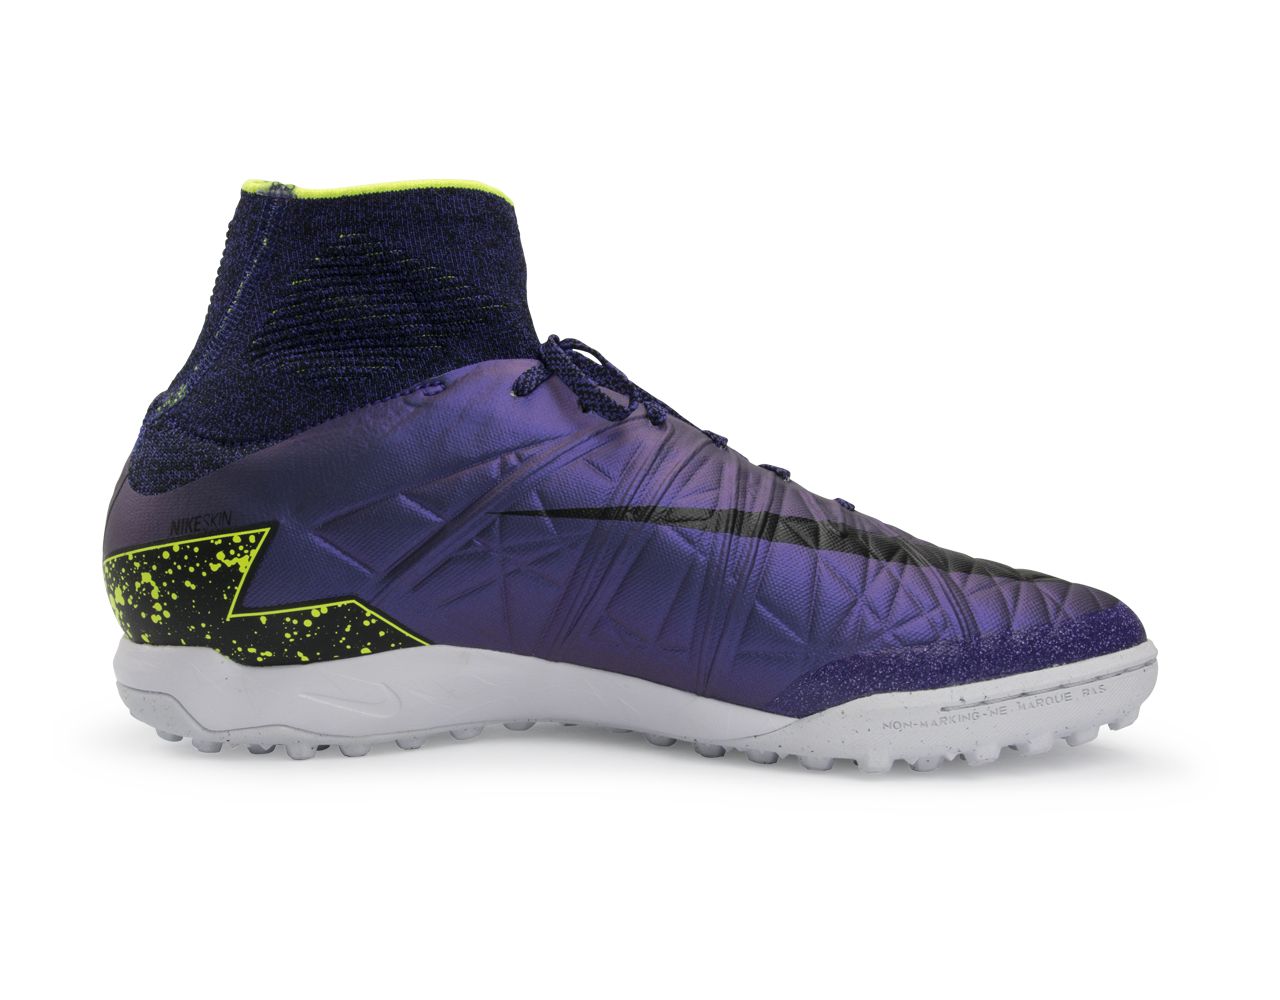 Nike Men's HypervenomX Proximo Turf Soccer Shoes Hyper Grape/Black/Volt